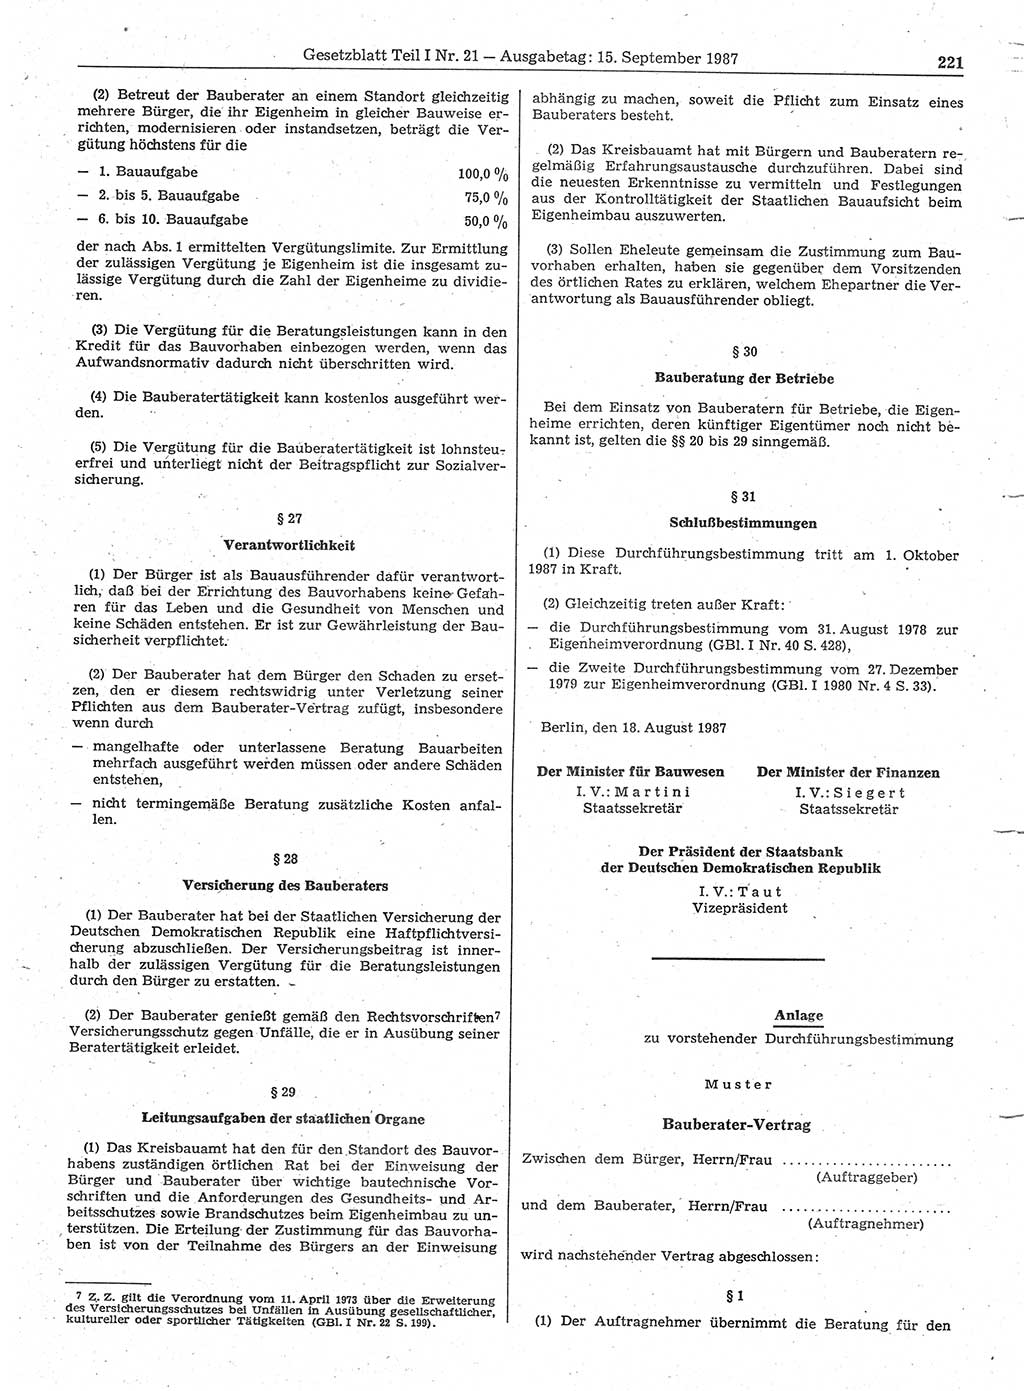 Gesetzblatt (GBl.) der Deutschen Demokratischen Republik (DDR) Teil Ⅰ 1987, Seite 221 (GBl. DDR Ⅰ 1987, S. 221)